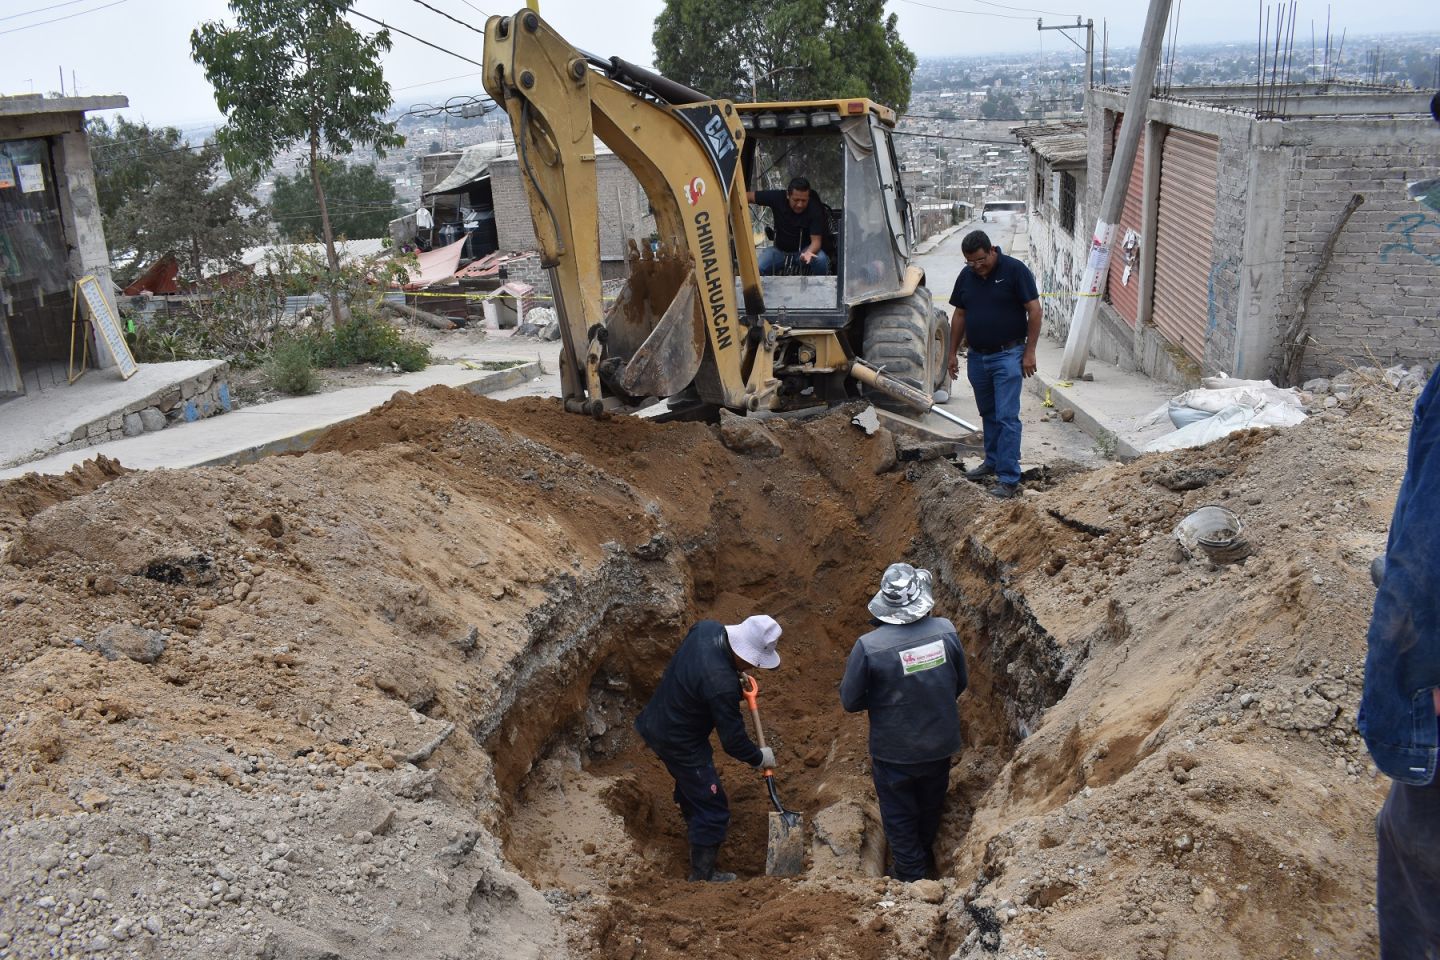 
En Chimalhuacan rehabilitamos drenaje en Ejido de Santa María
